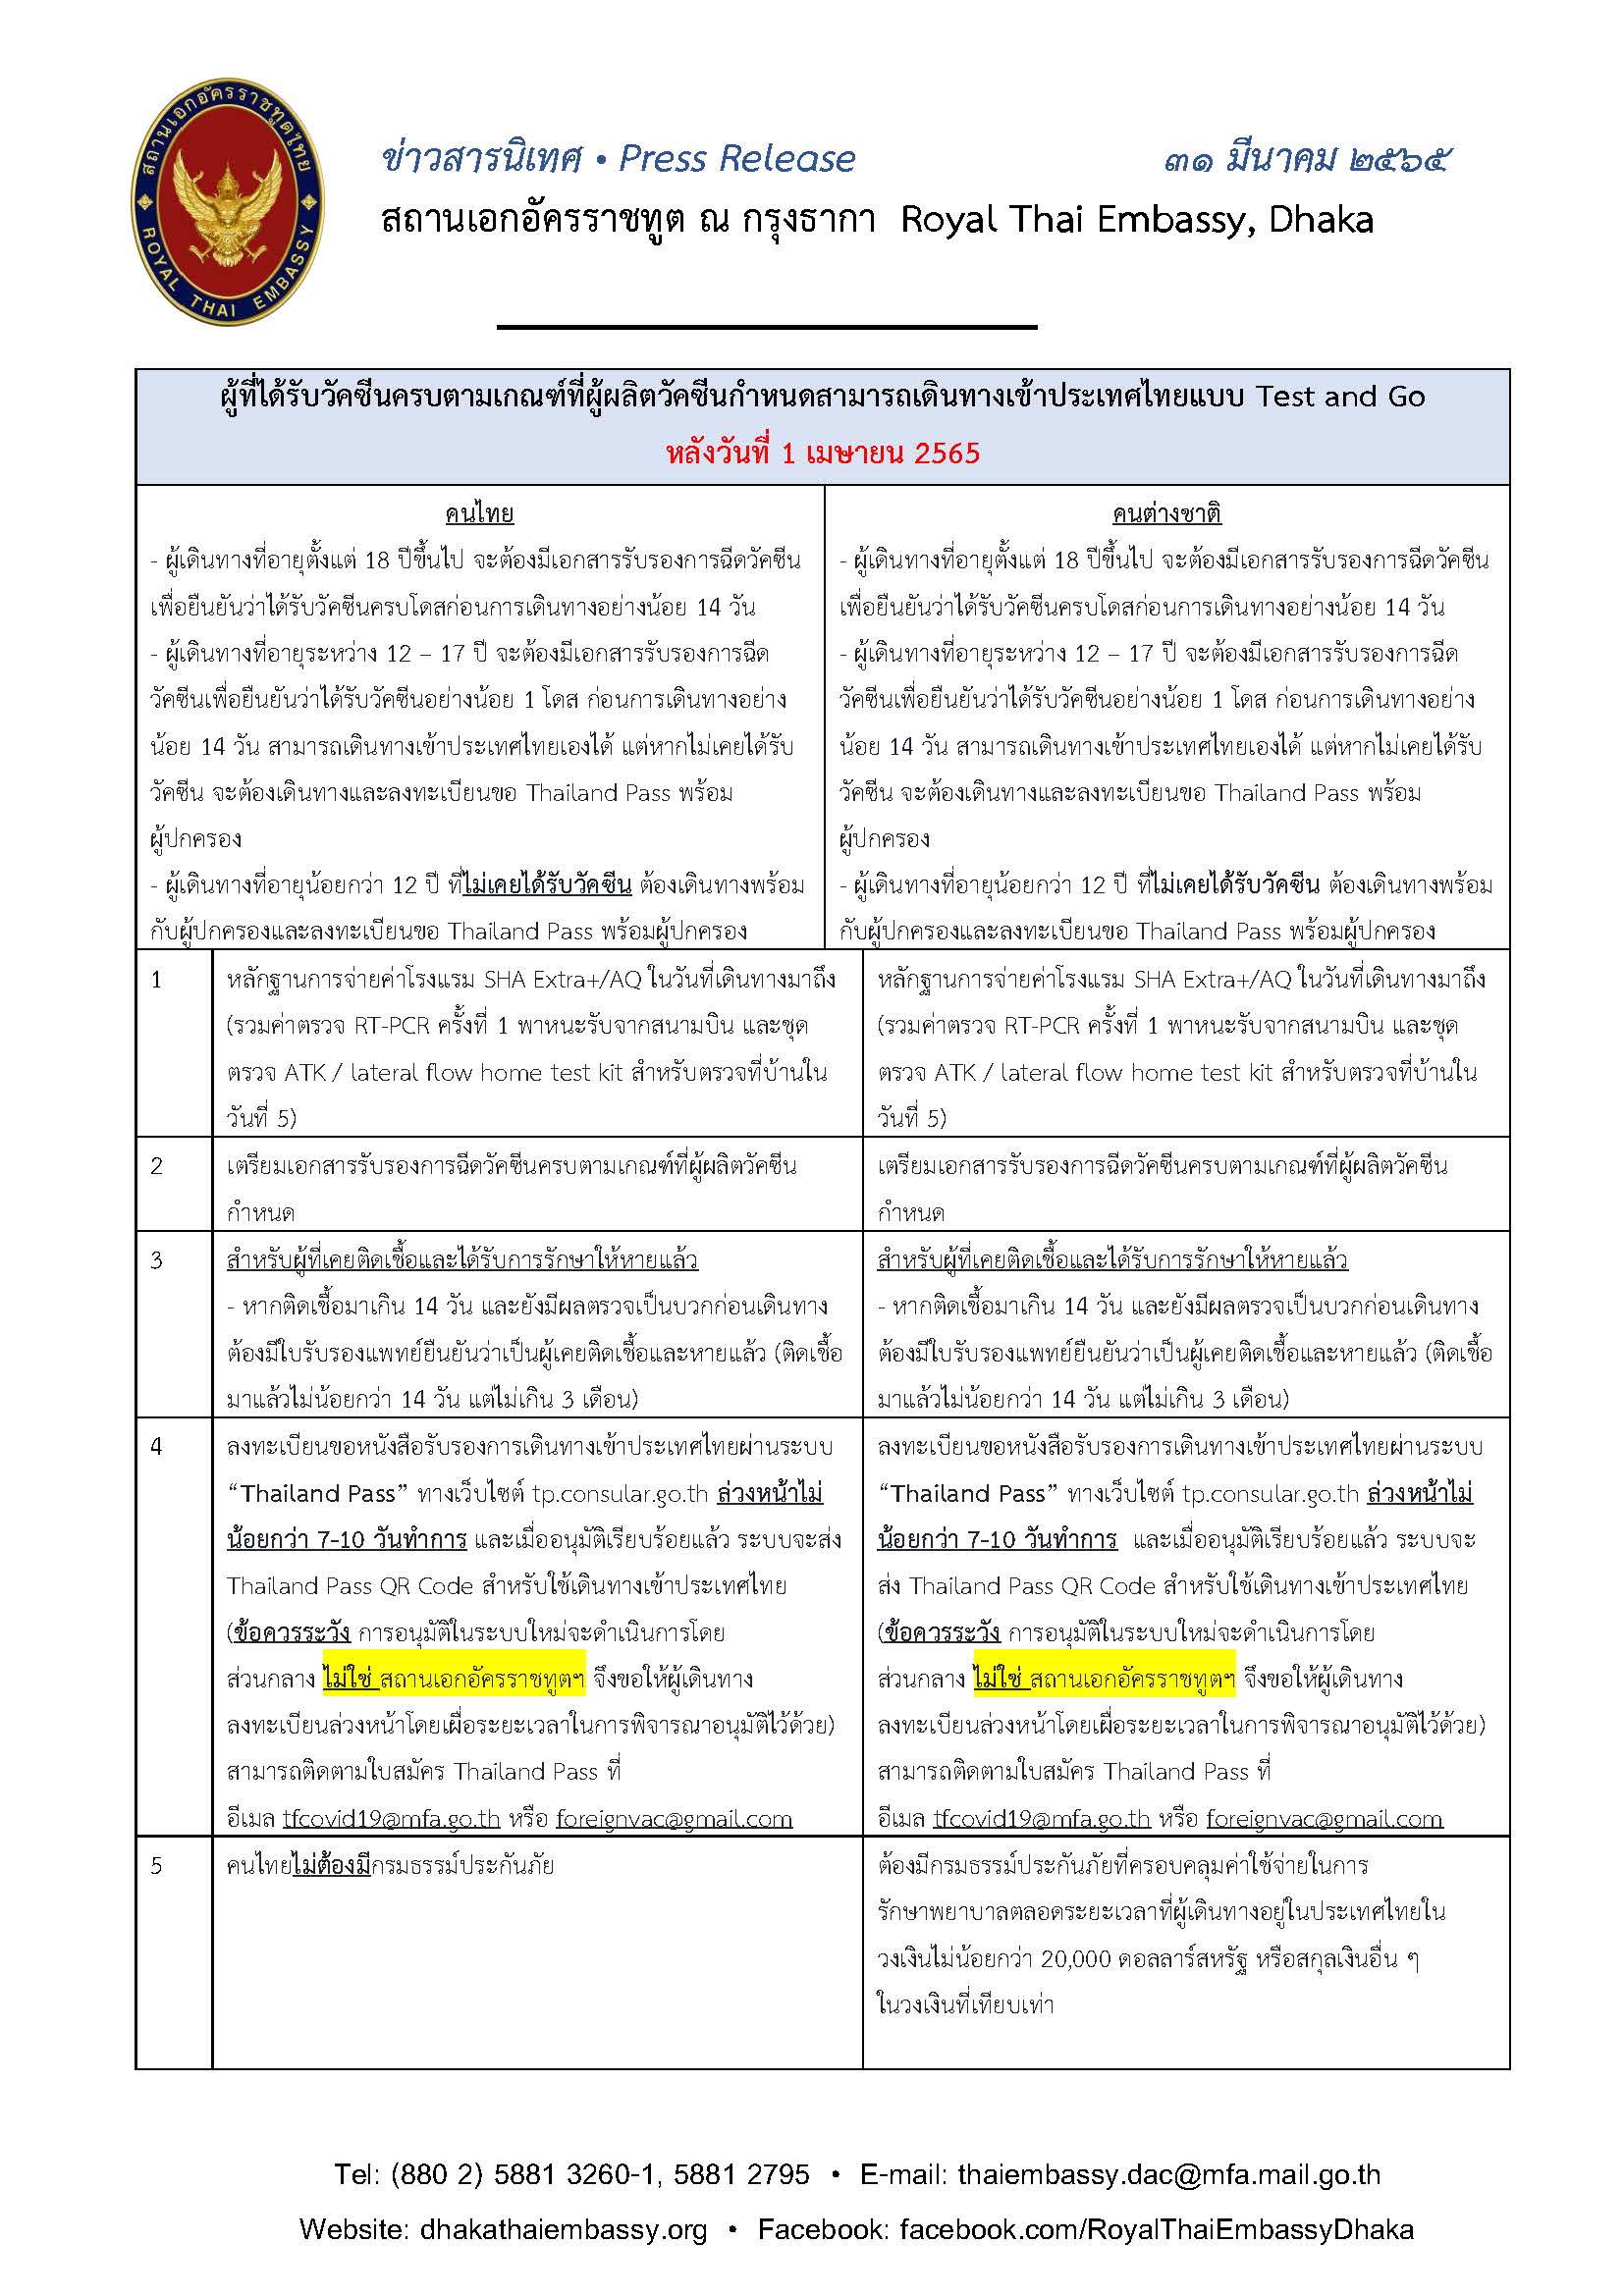 65.03.31_ข่าวสารนิเทศมาตรการเข้าไทย_(ไทย)_Page_1